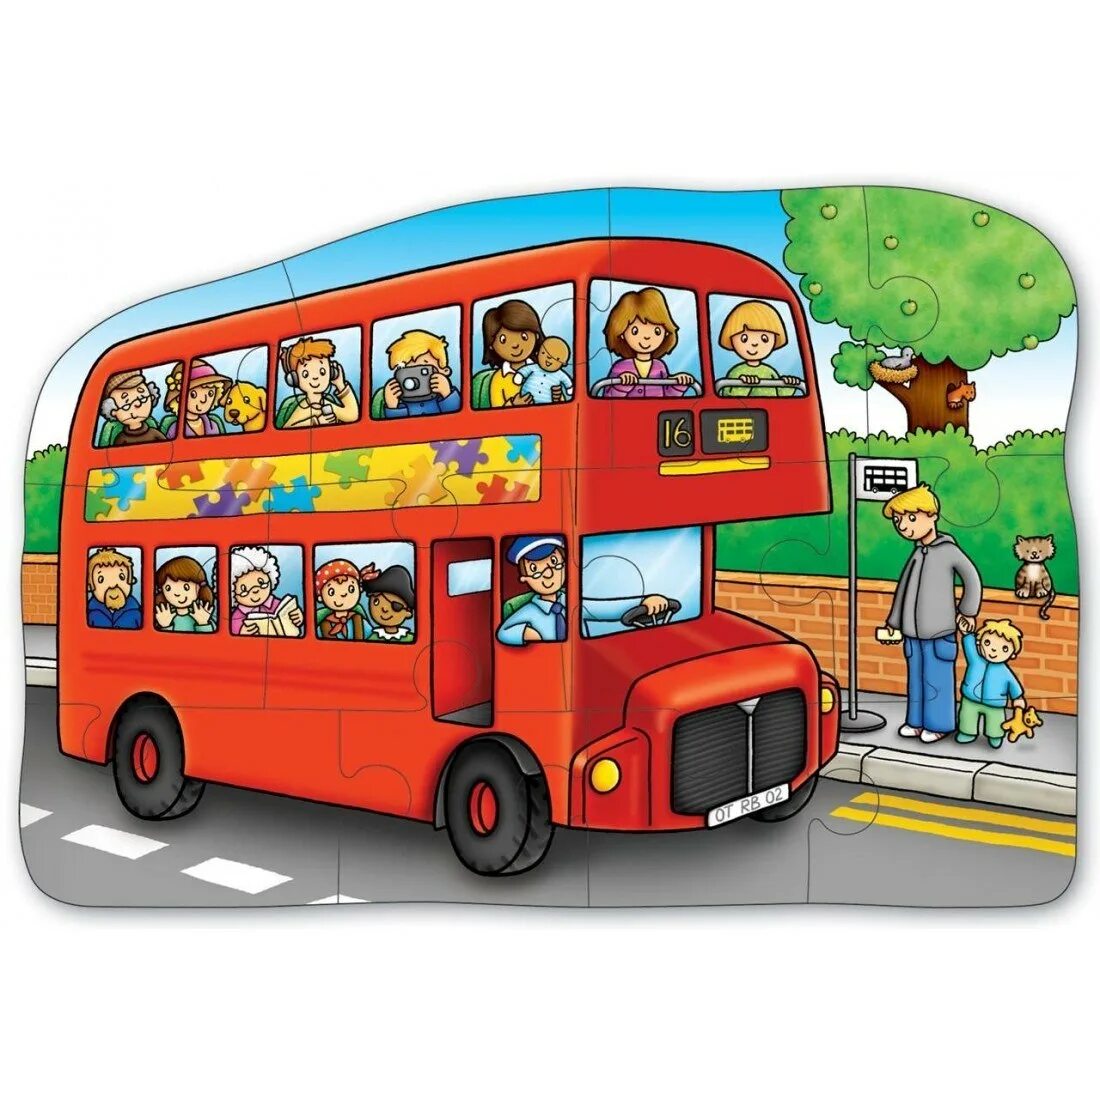 Автобус для детей. Автобус для детского сада. Изображение автобуса для детей. Автобус картинка для детей.